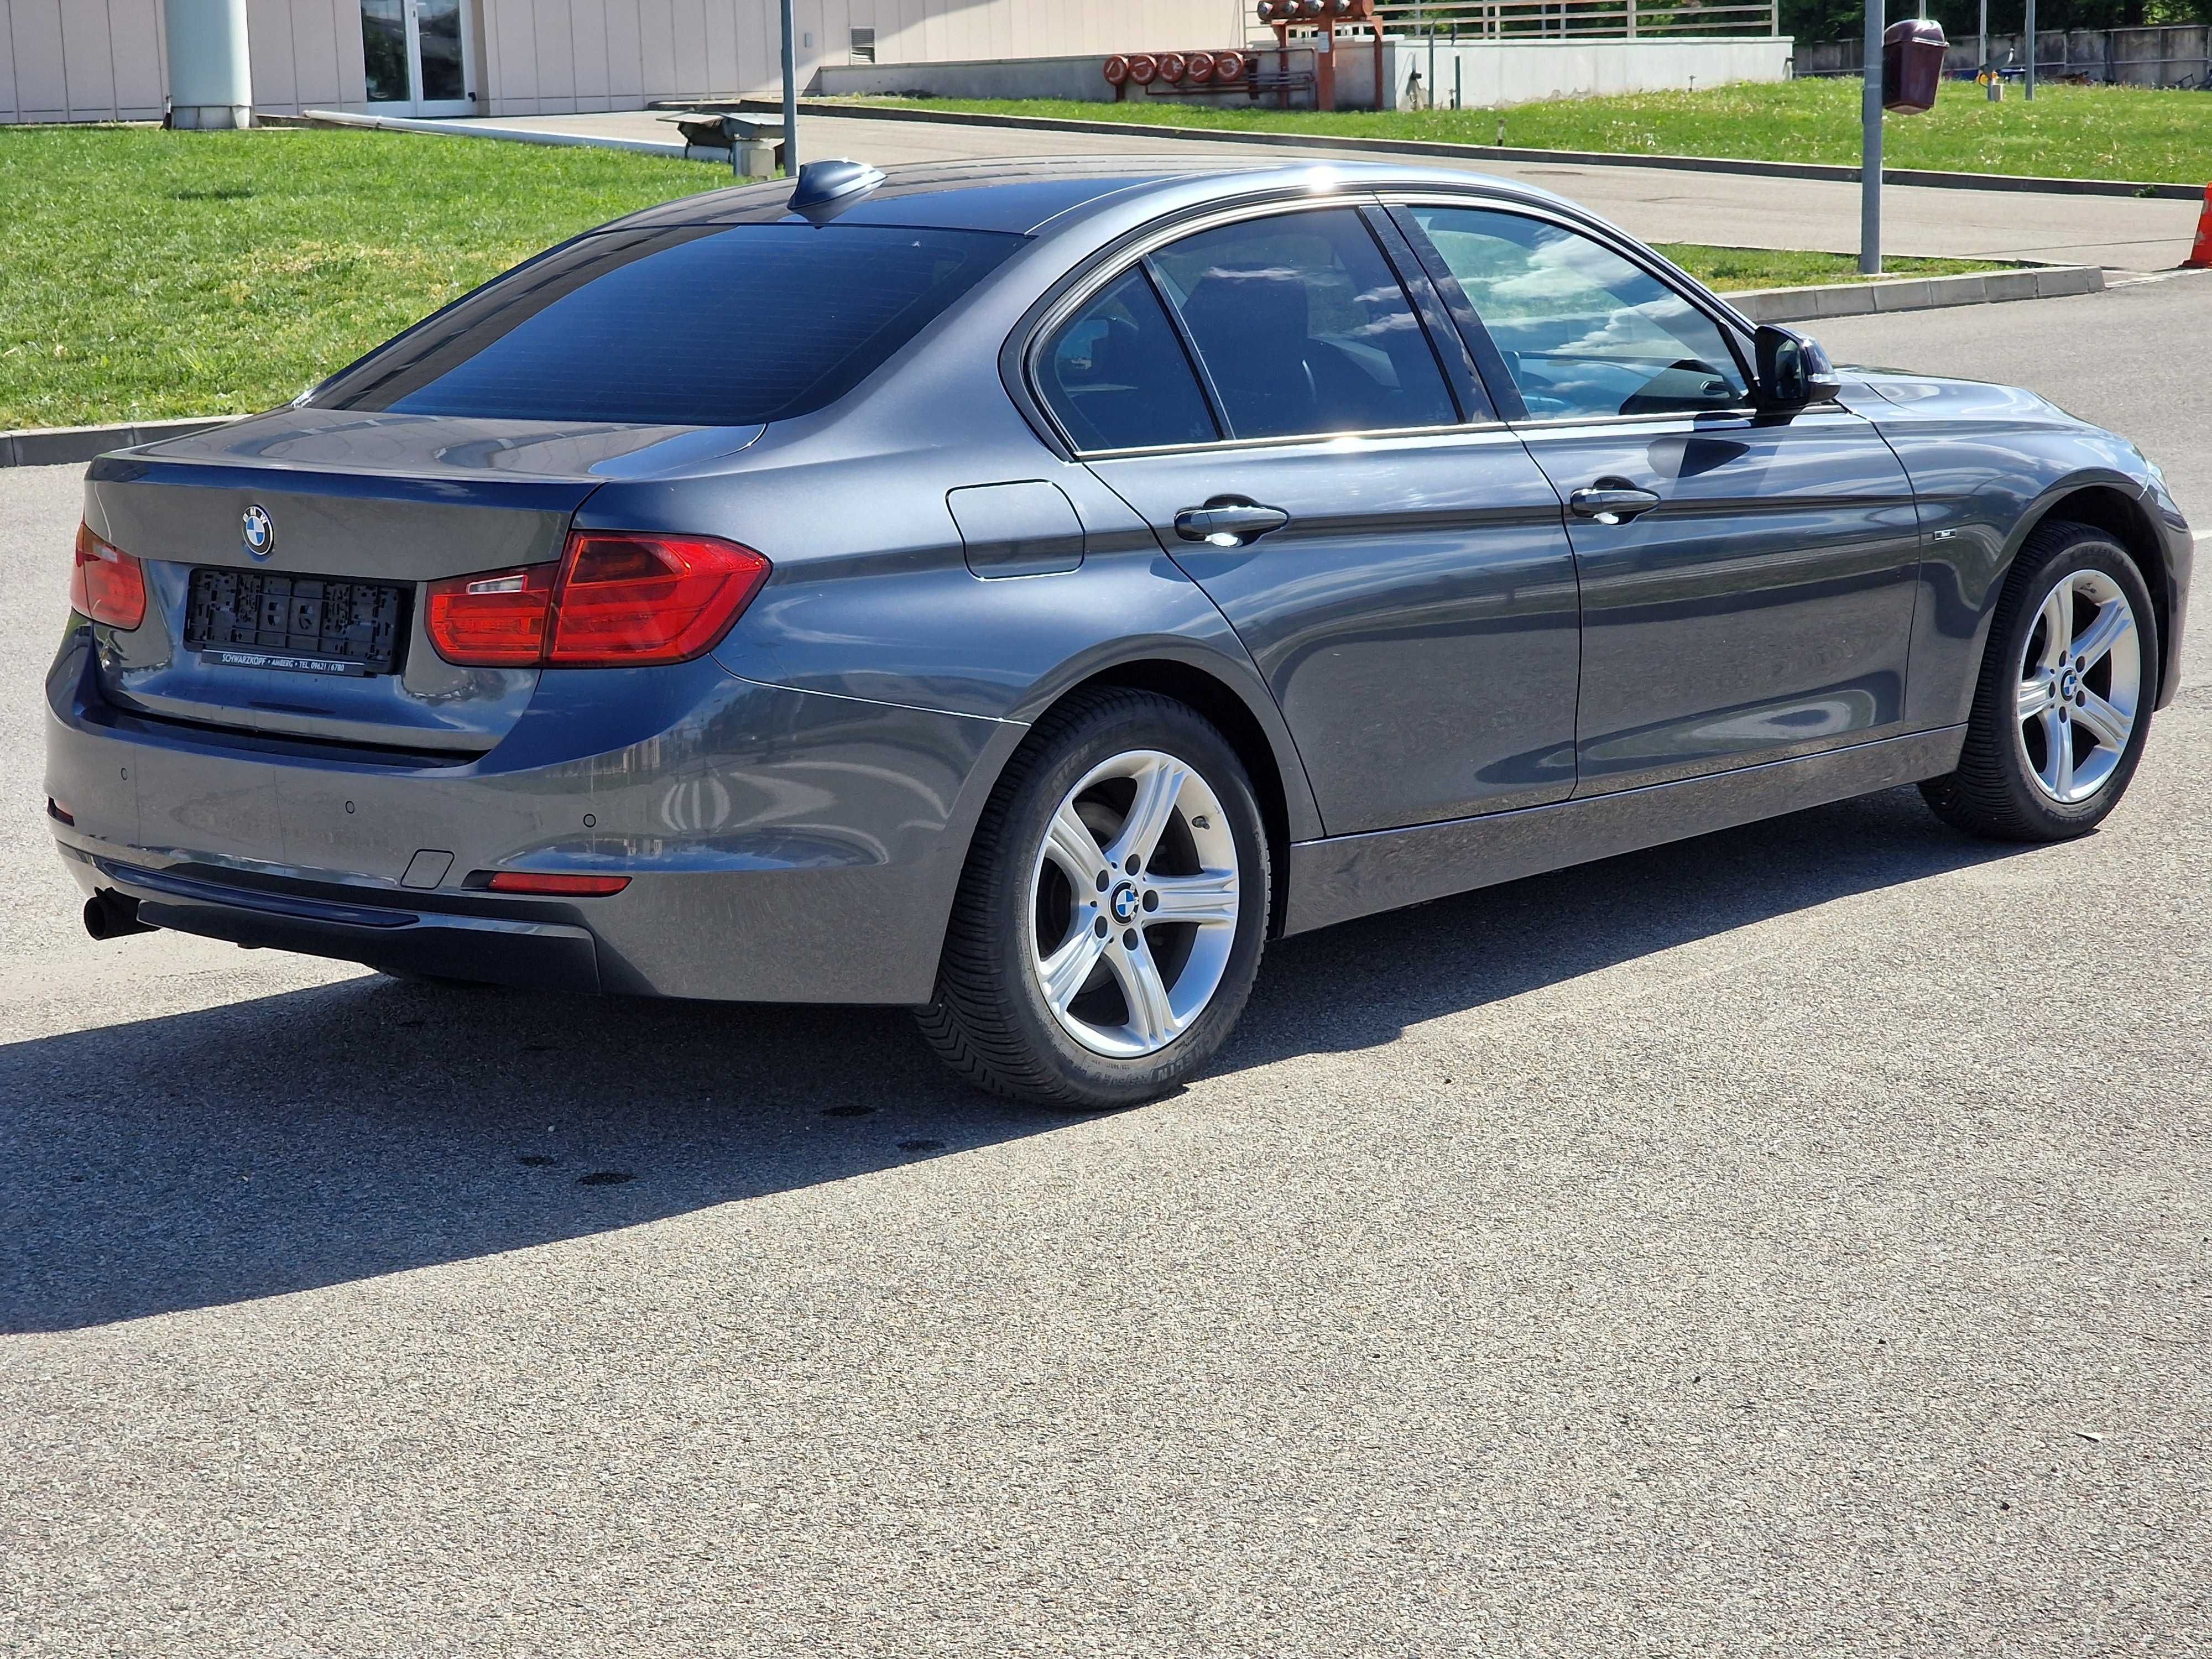 BMW F30 benzina 316i euro 6 fabricatie 2014